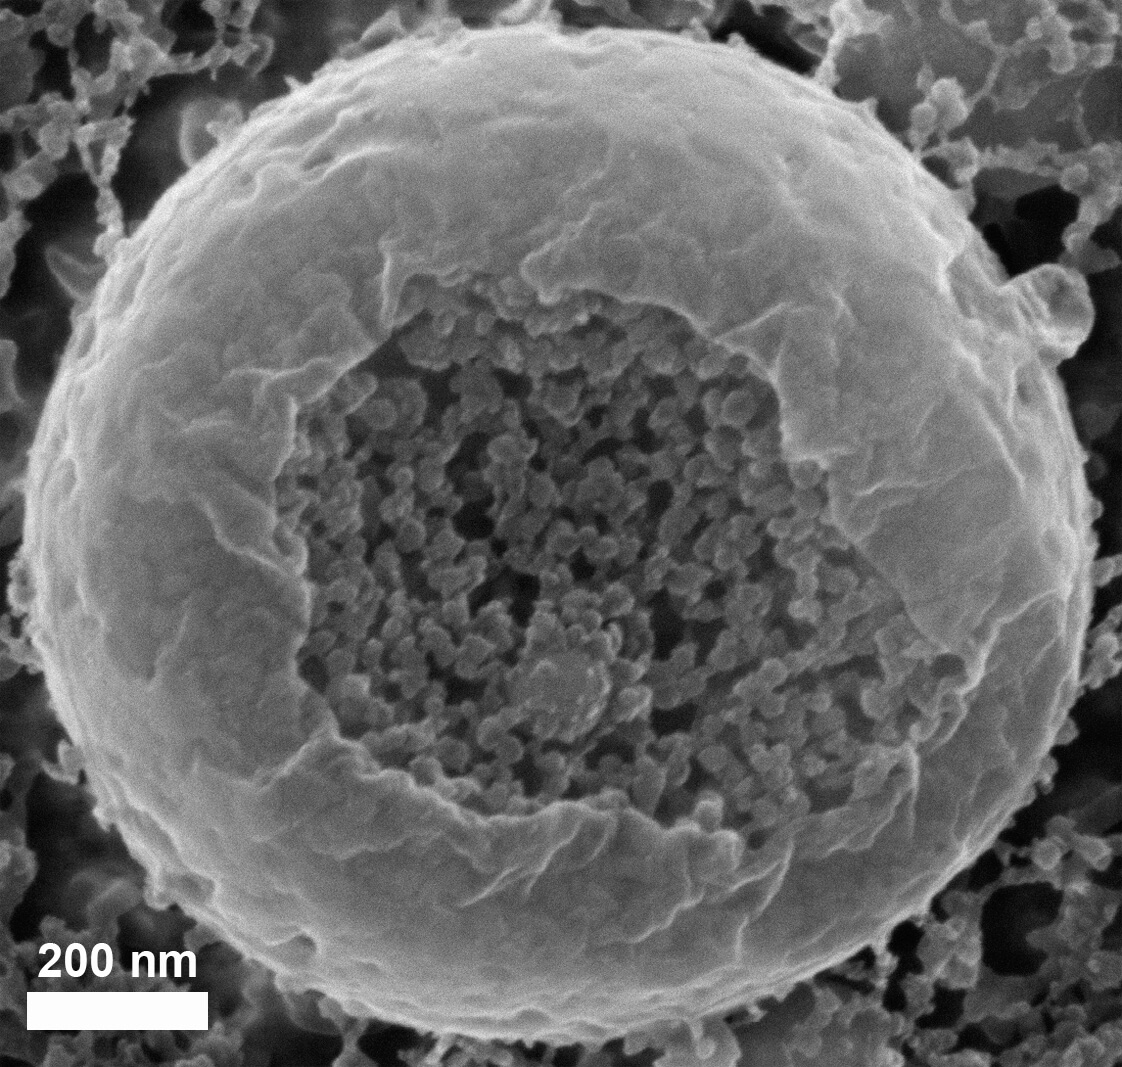 צילום במיקרוסקופ אלקטרונים סורק: שלפוחית המכילה ננו-כדוריות של סידן פחמתי, שגודלן 20 עד 30 ננו-מטרים, בדגימת עובר קיפוד ים קפואה